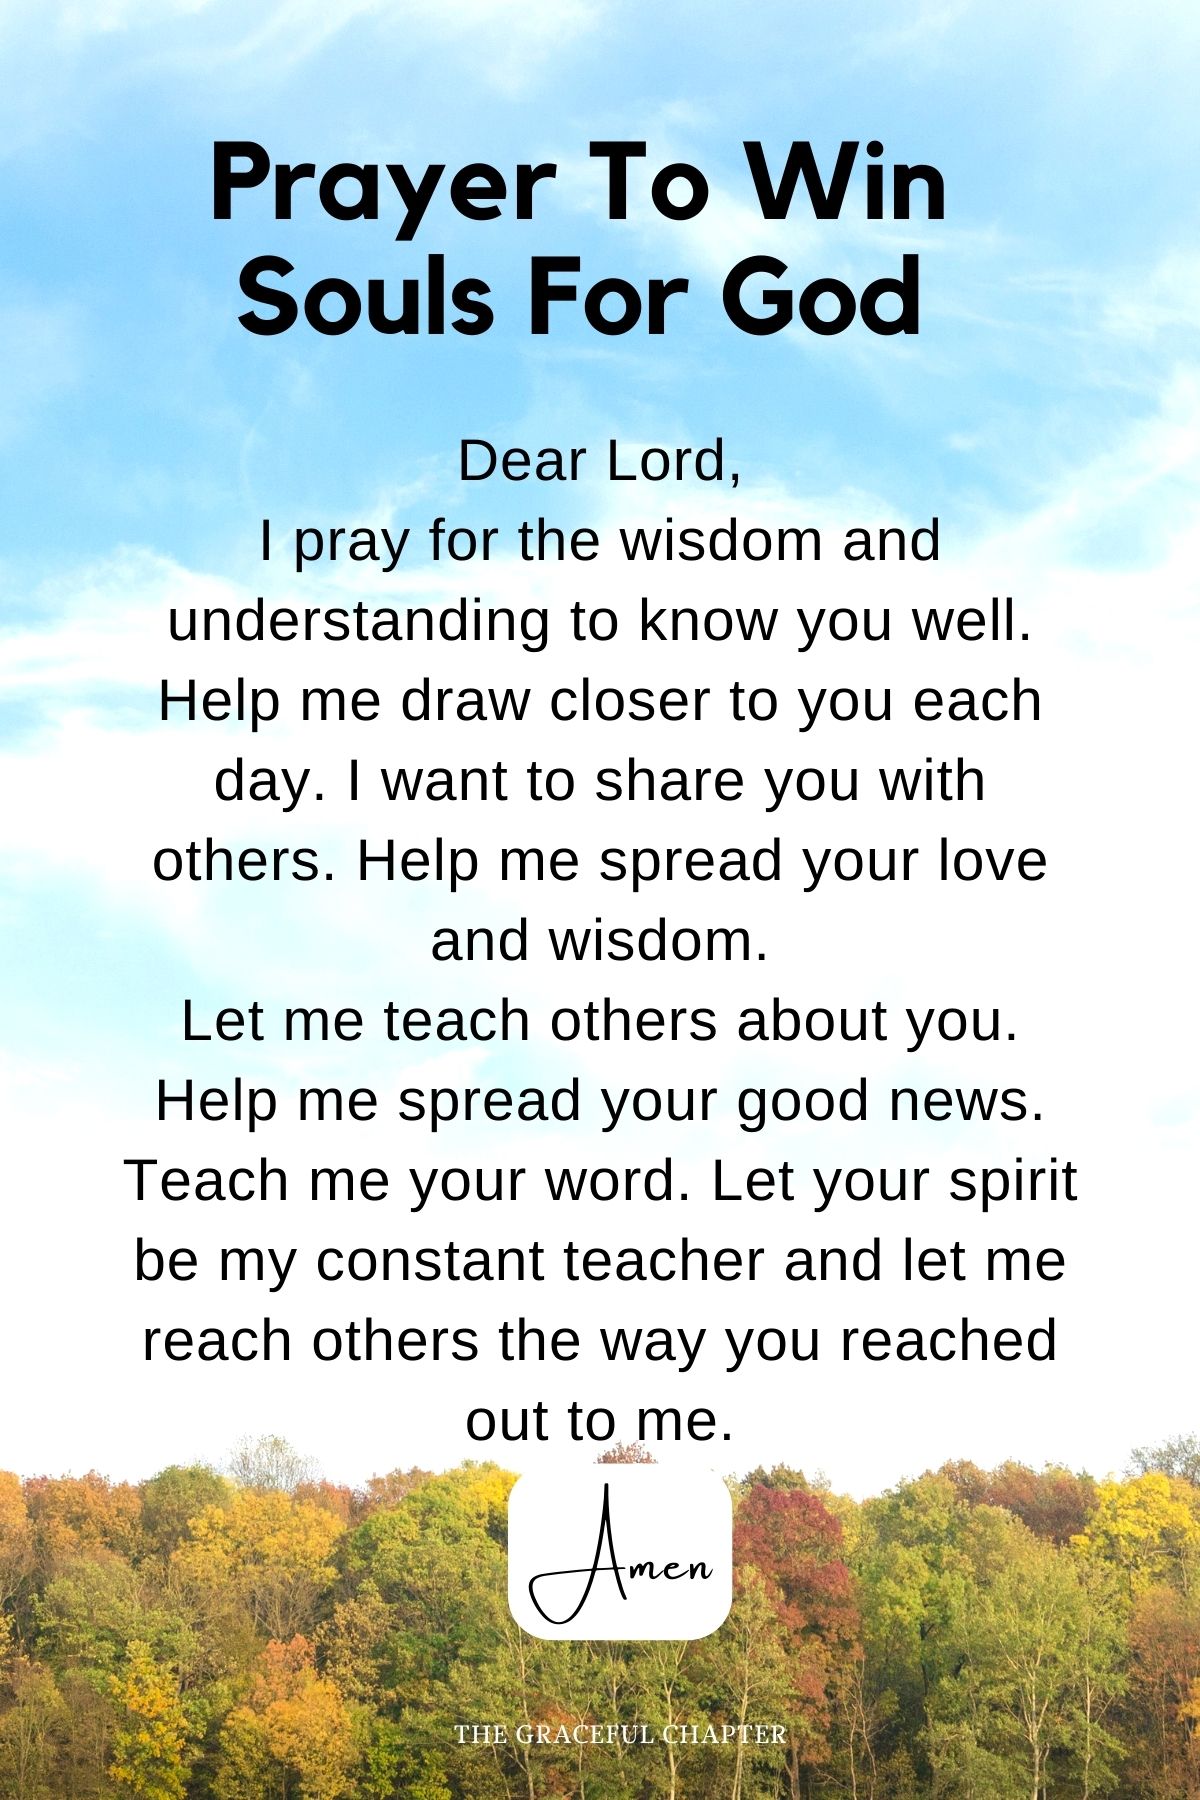 Prayer to win souls for God